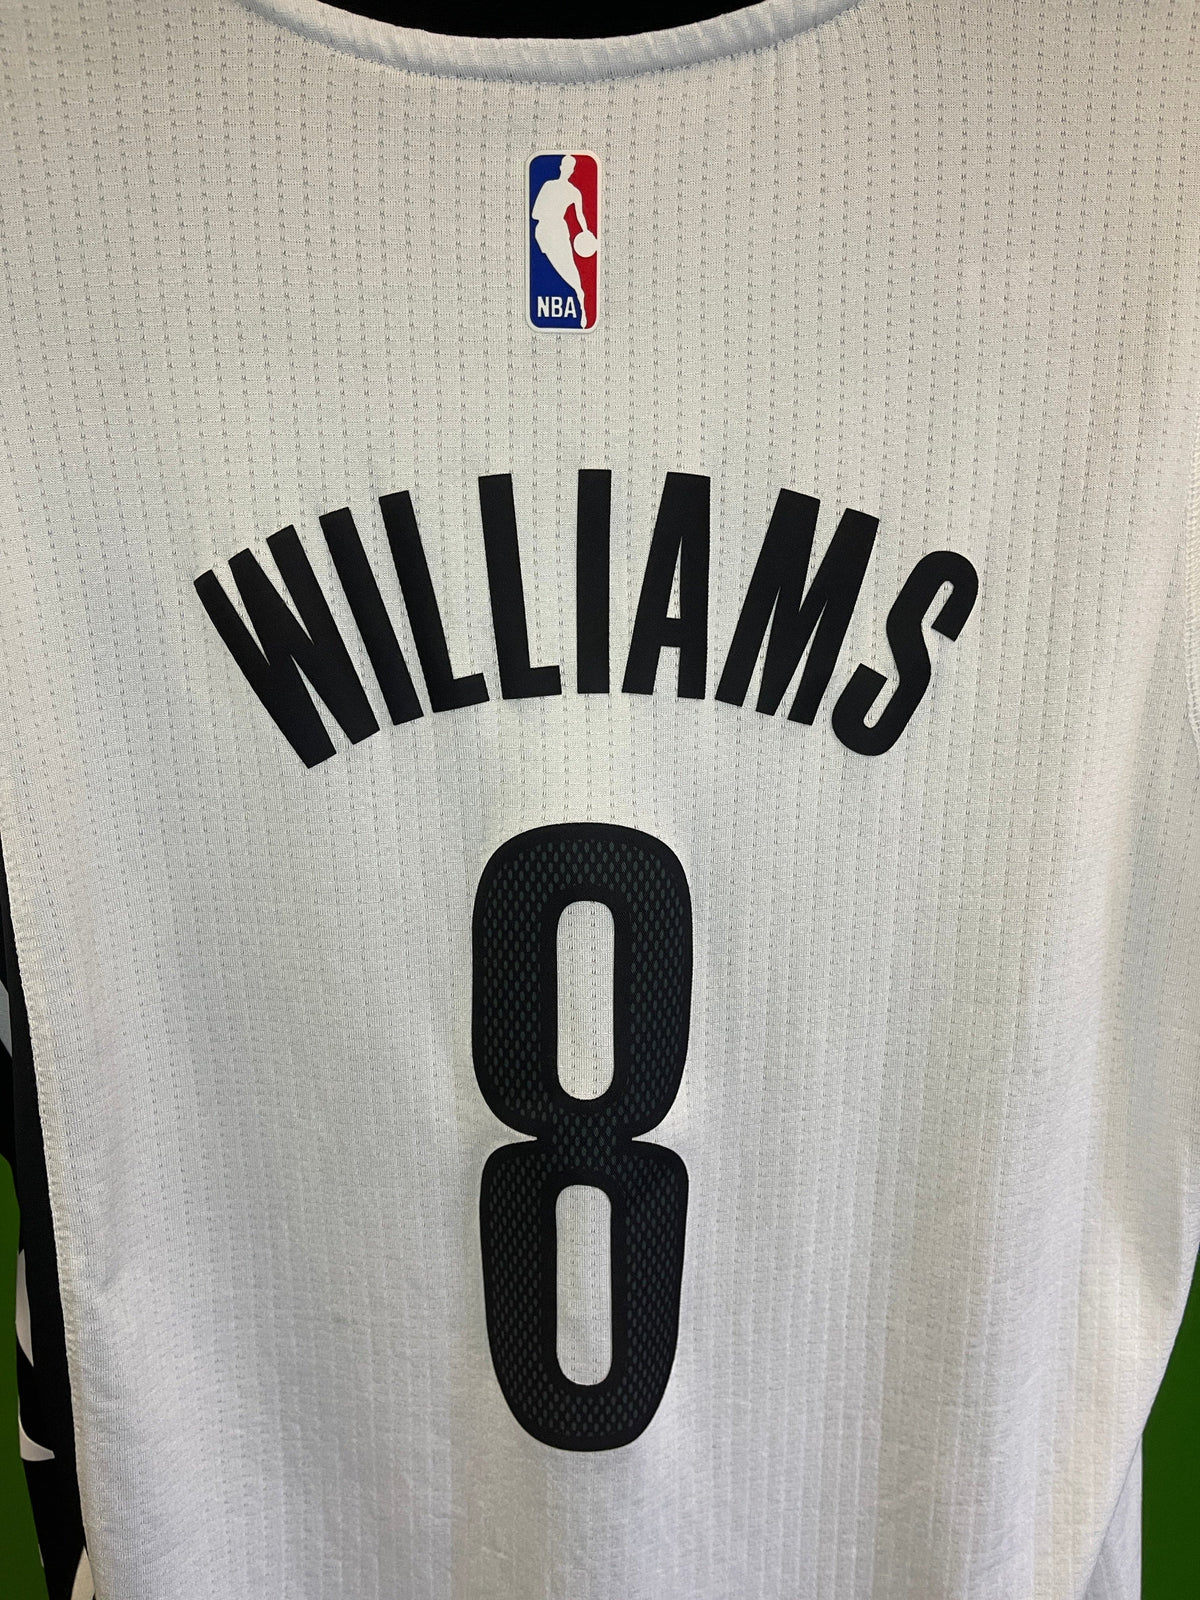 NBA Brooklyn Nets Deron Williams #8 Swingman +2" Length Jersey Men's Large